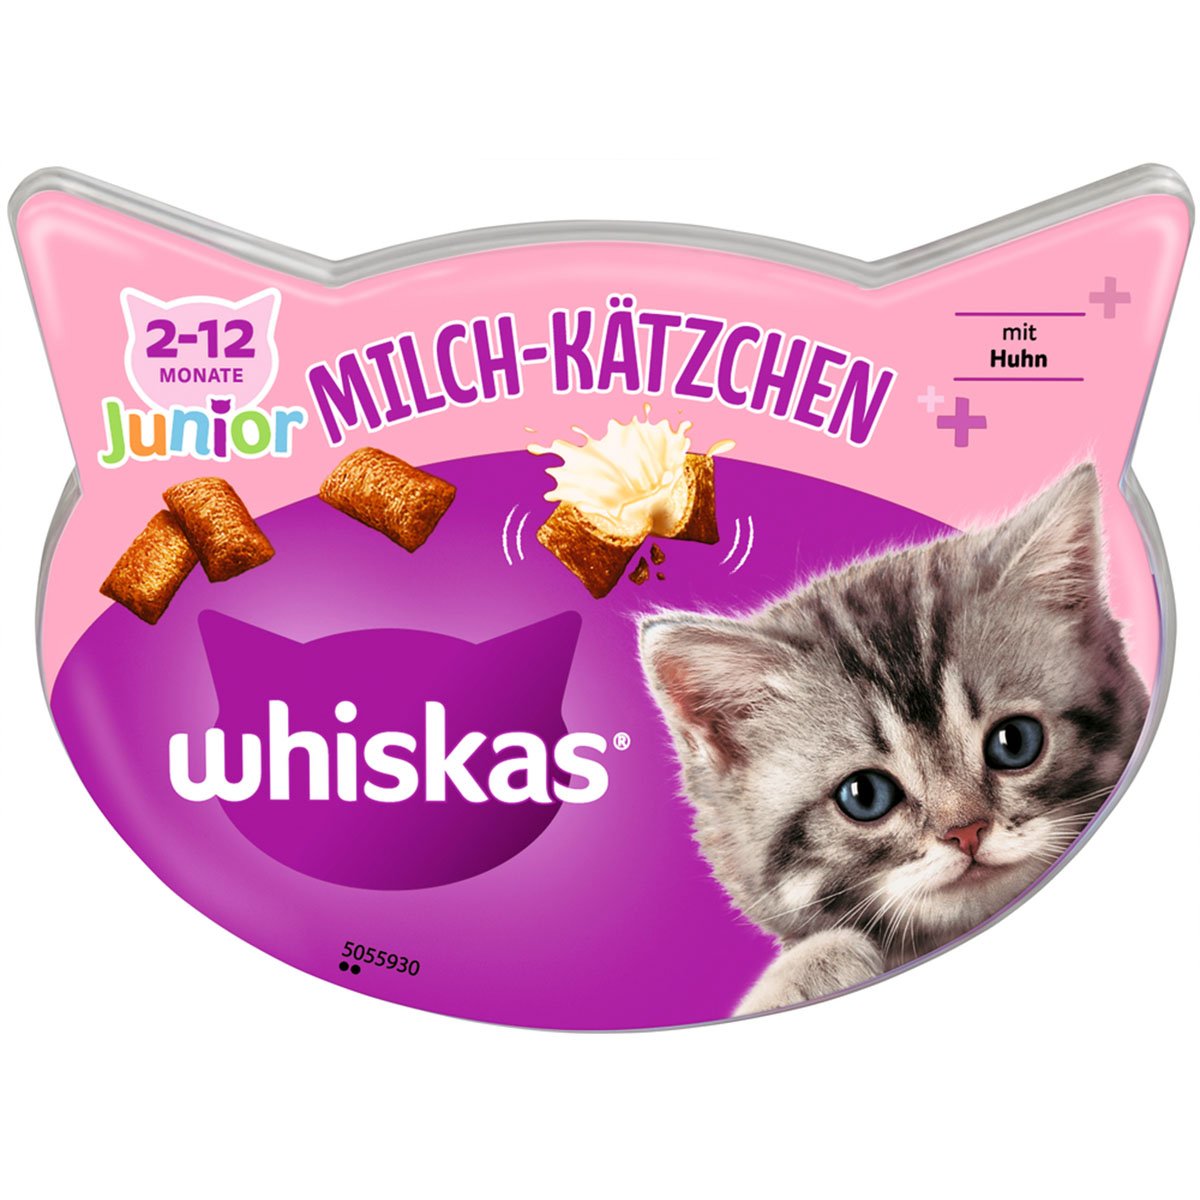 Whiskas Milch-Kätzchen 8x55g